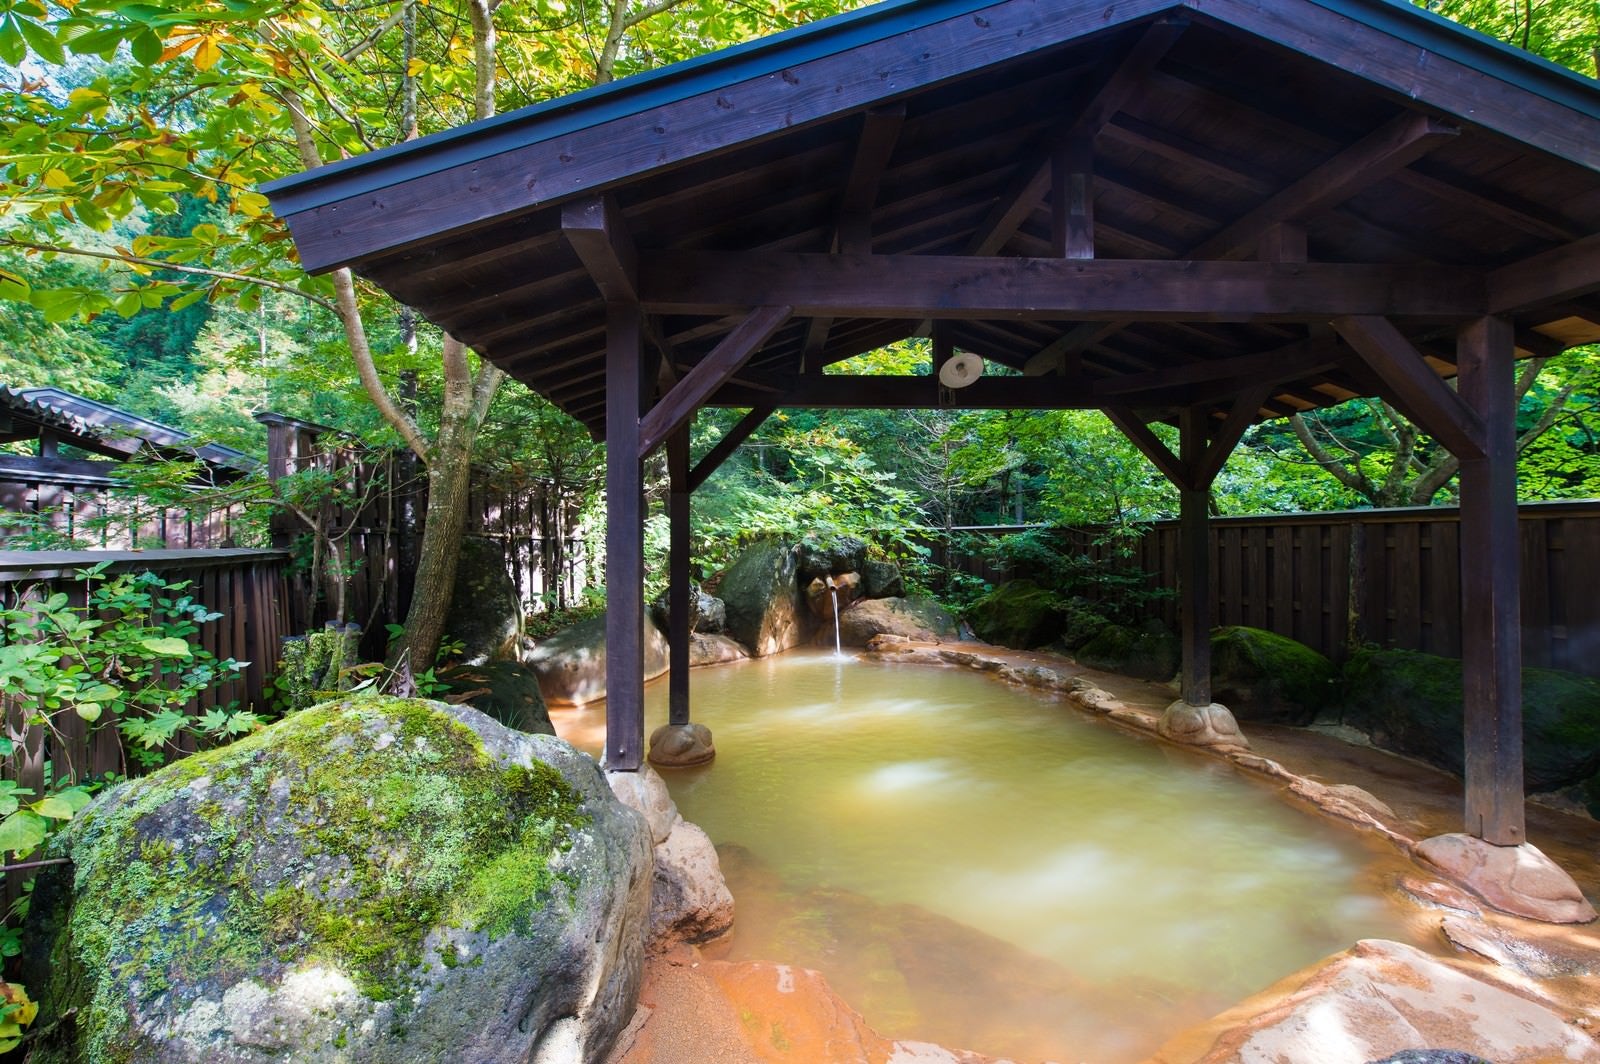 「限りなく天然に近い「平湯民俗館」の源泉かけ流し露天風呂」の写真